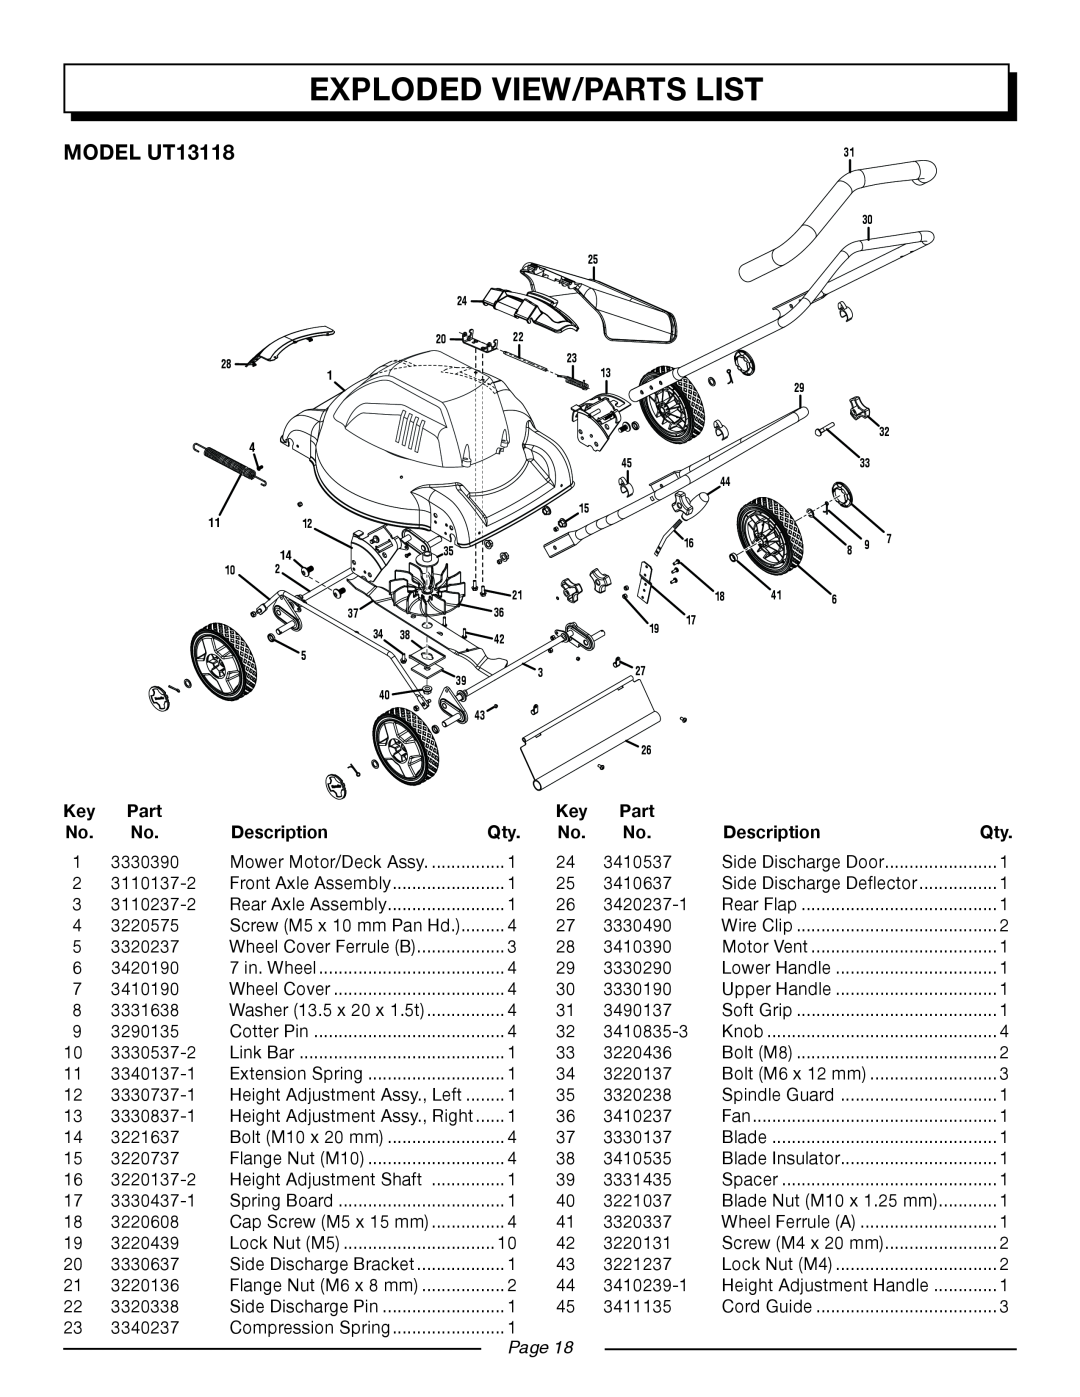 Homelite UT13120 manual Exploded View/Parts List, MODEL UT13118, Description, Page 